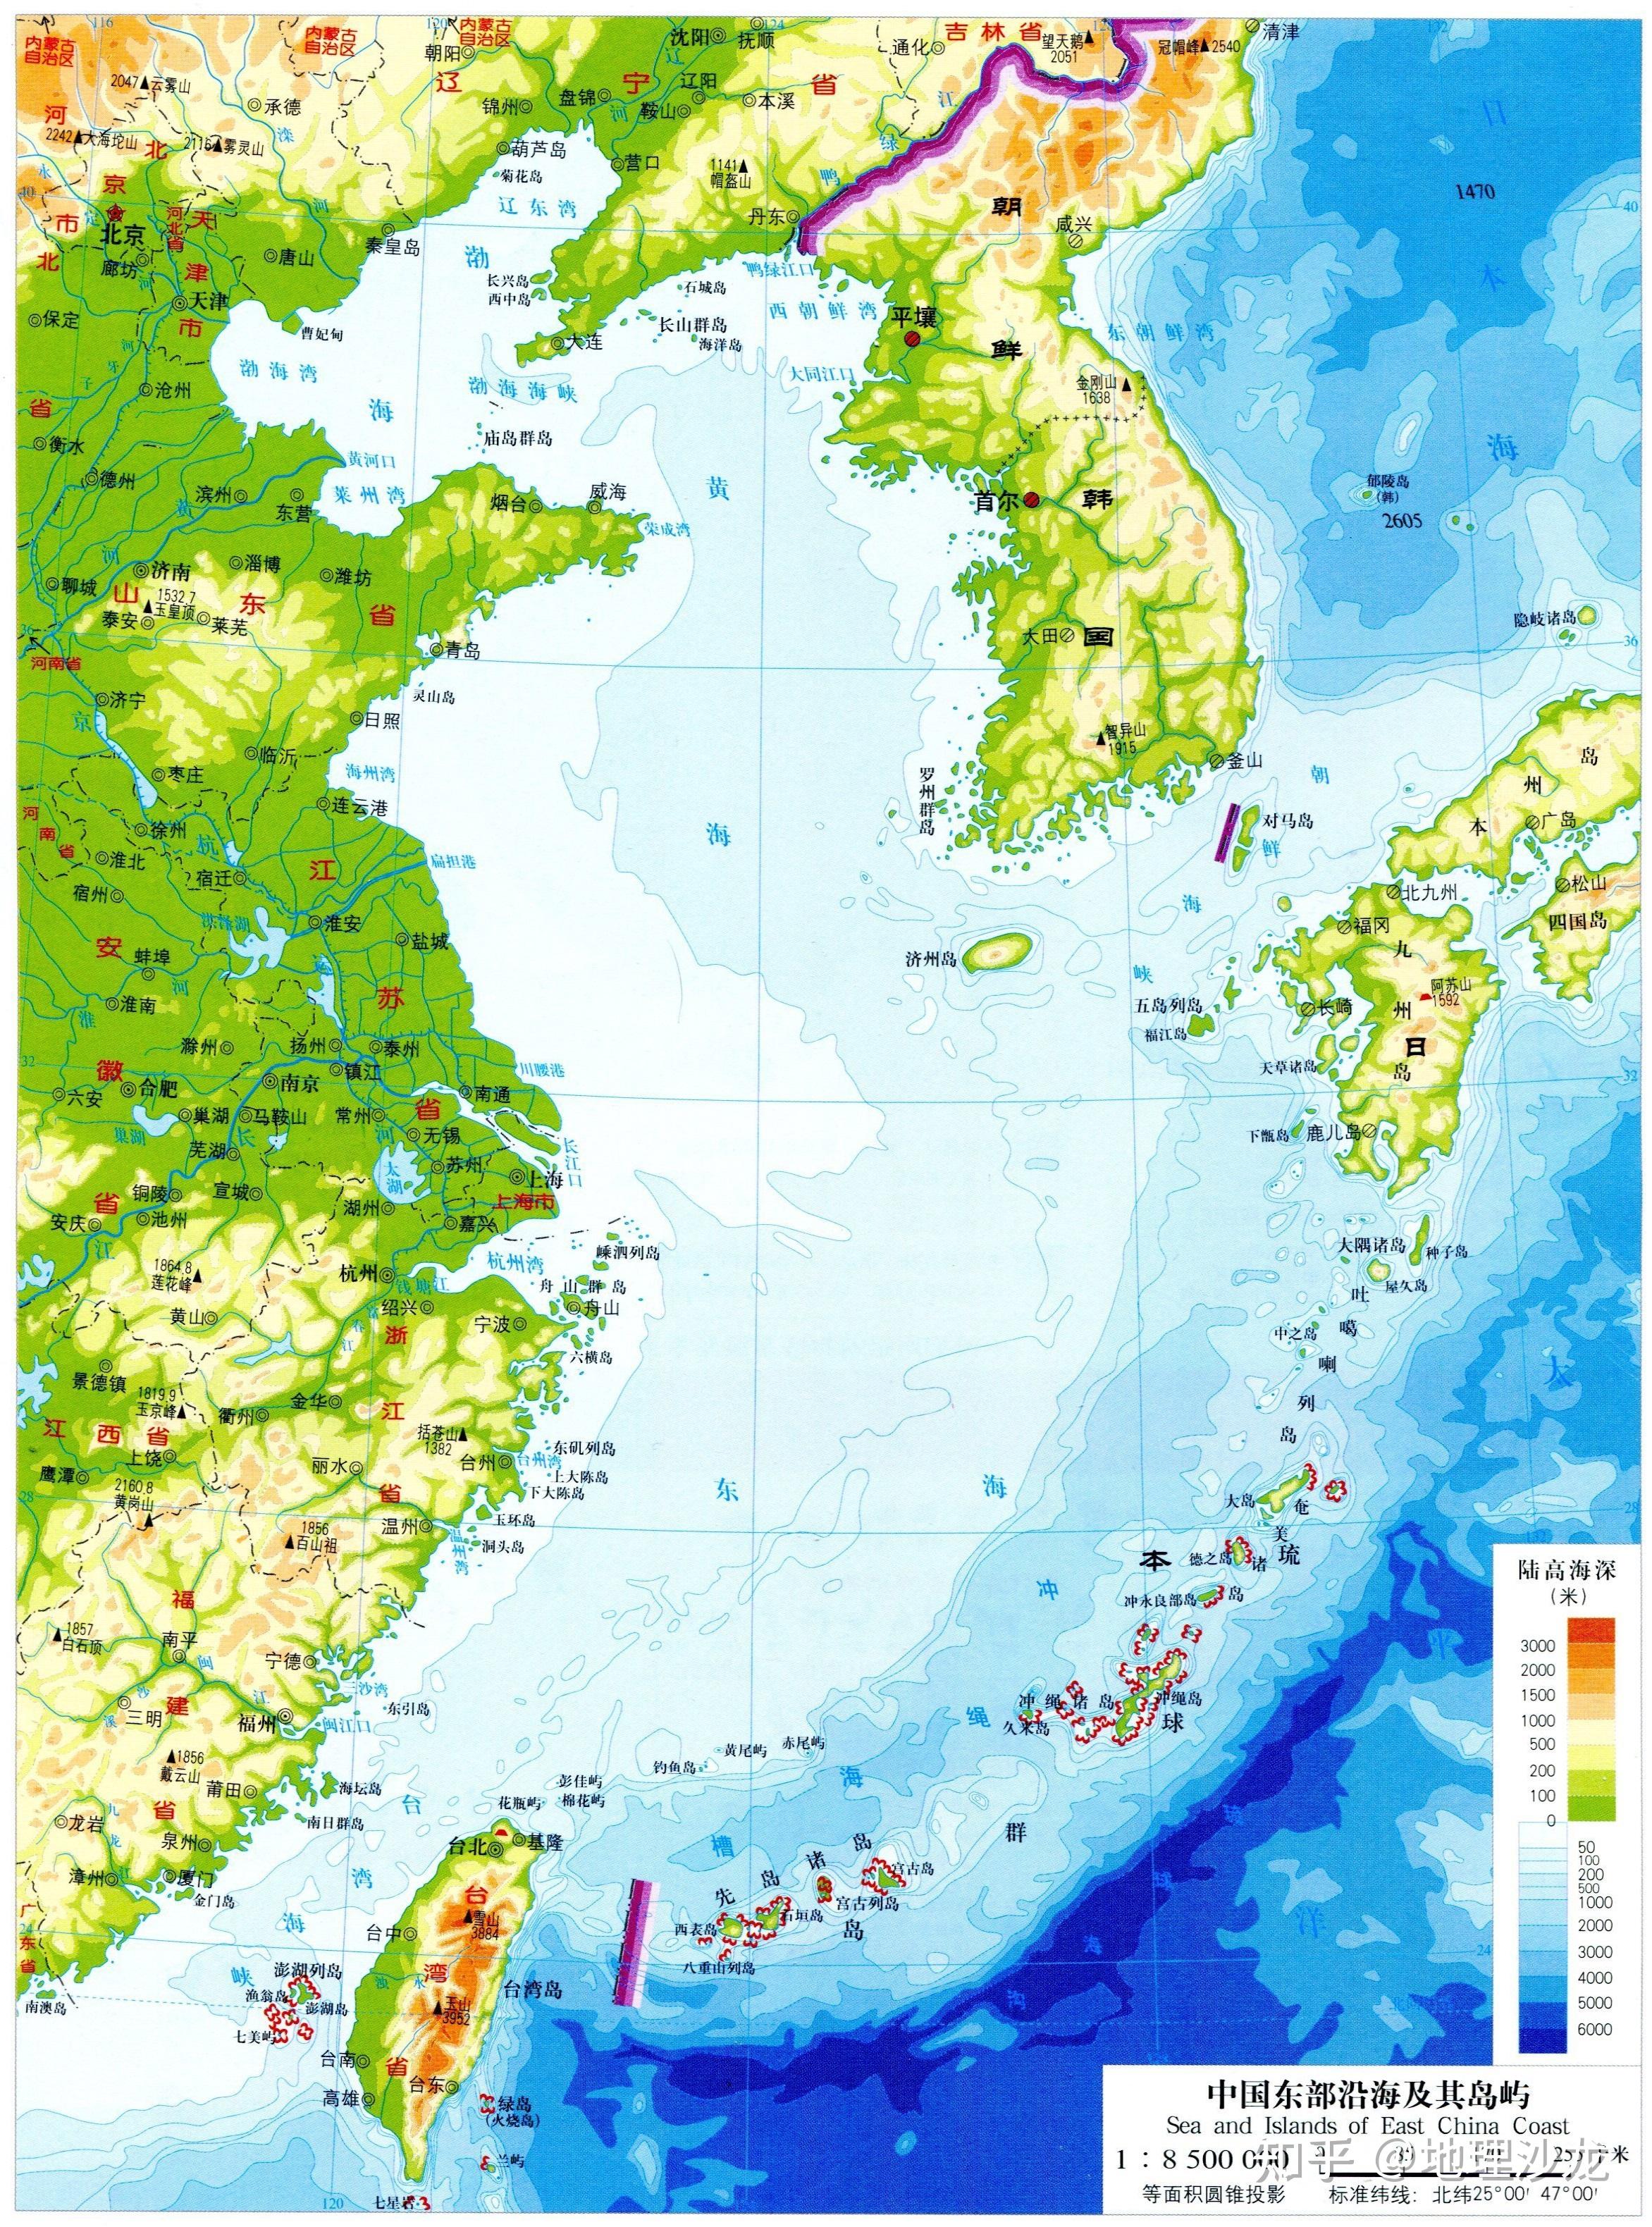 中国东部沿海及其岛屿分布图我国长江口以南的南方地区,地形多以丘陵